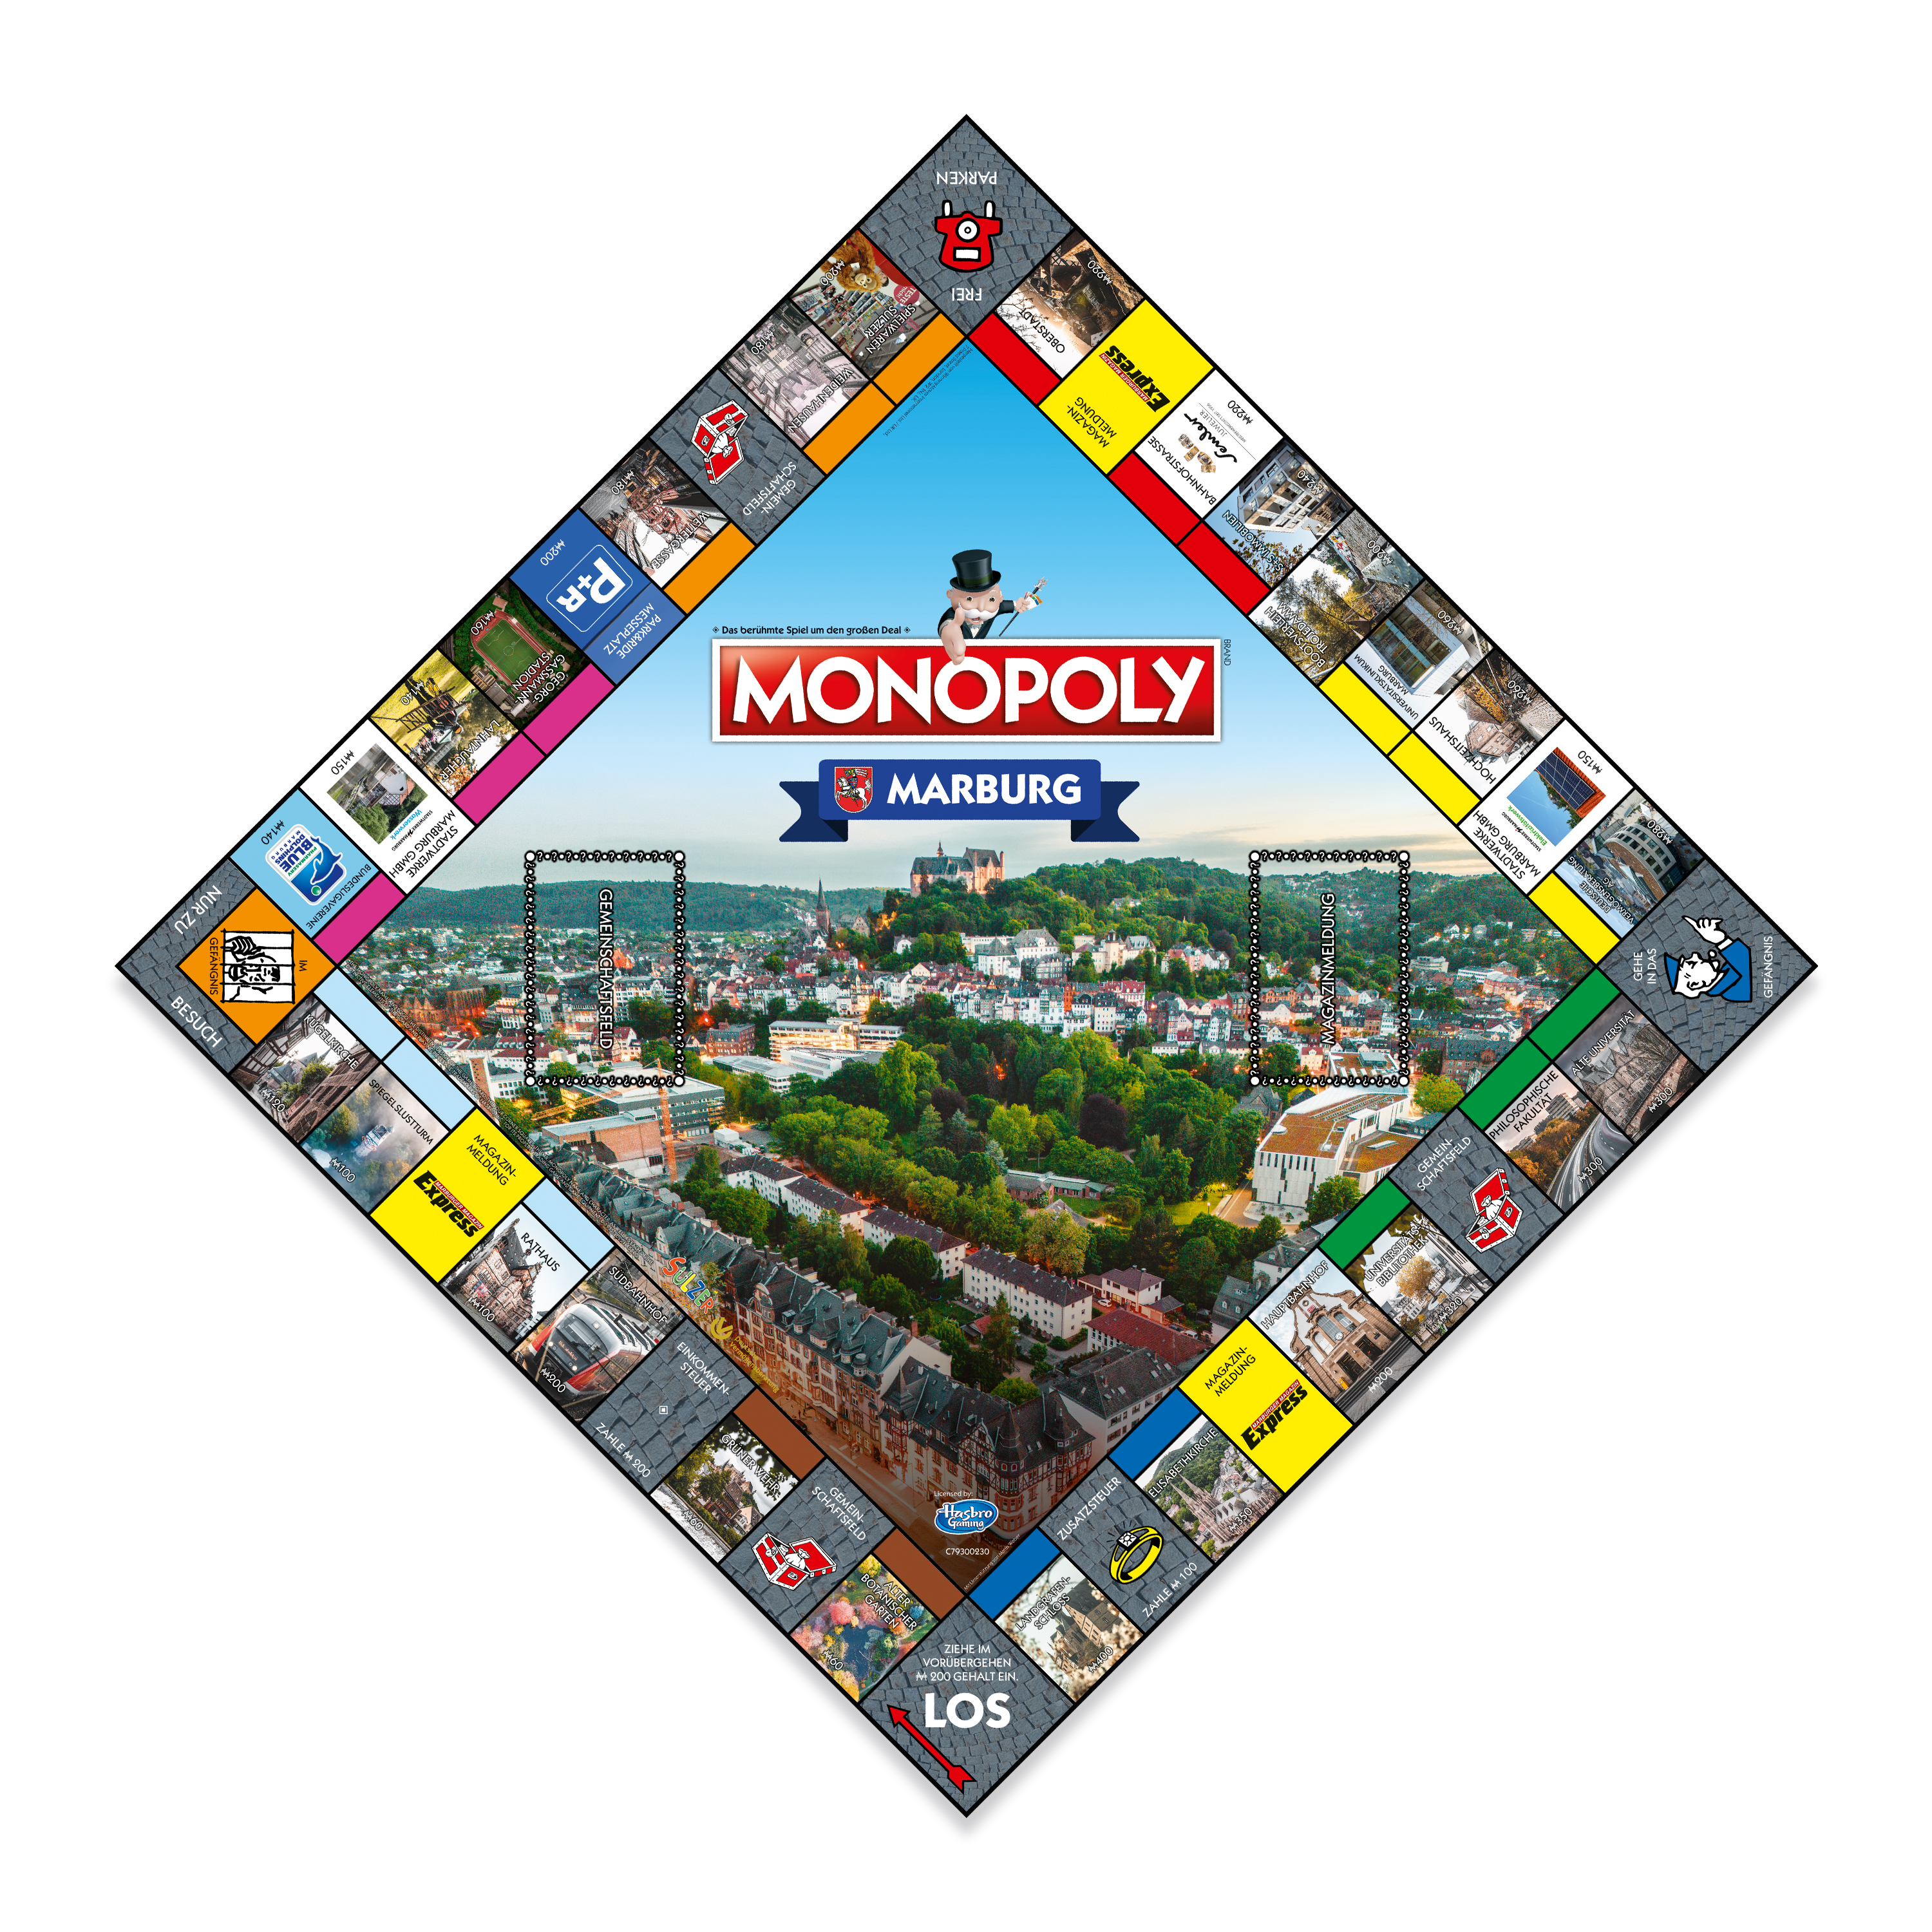 Monopoly - Marburg